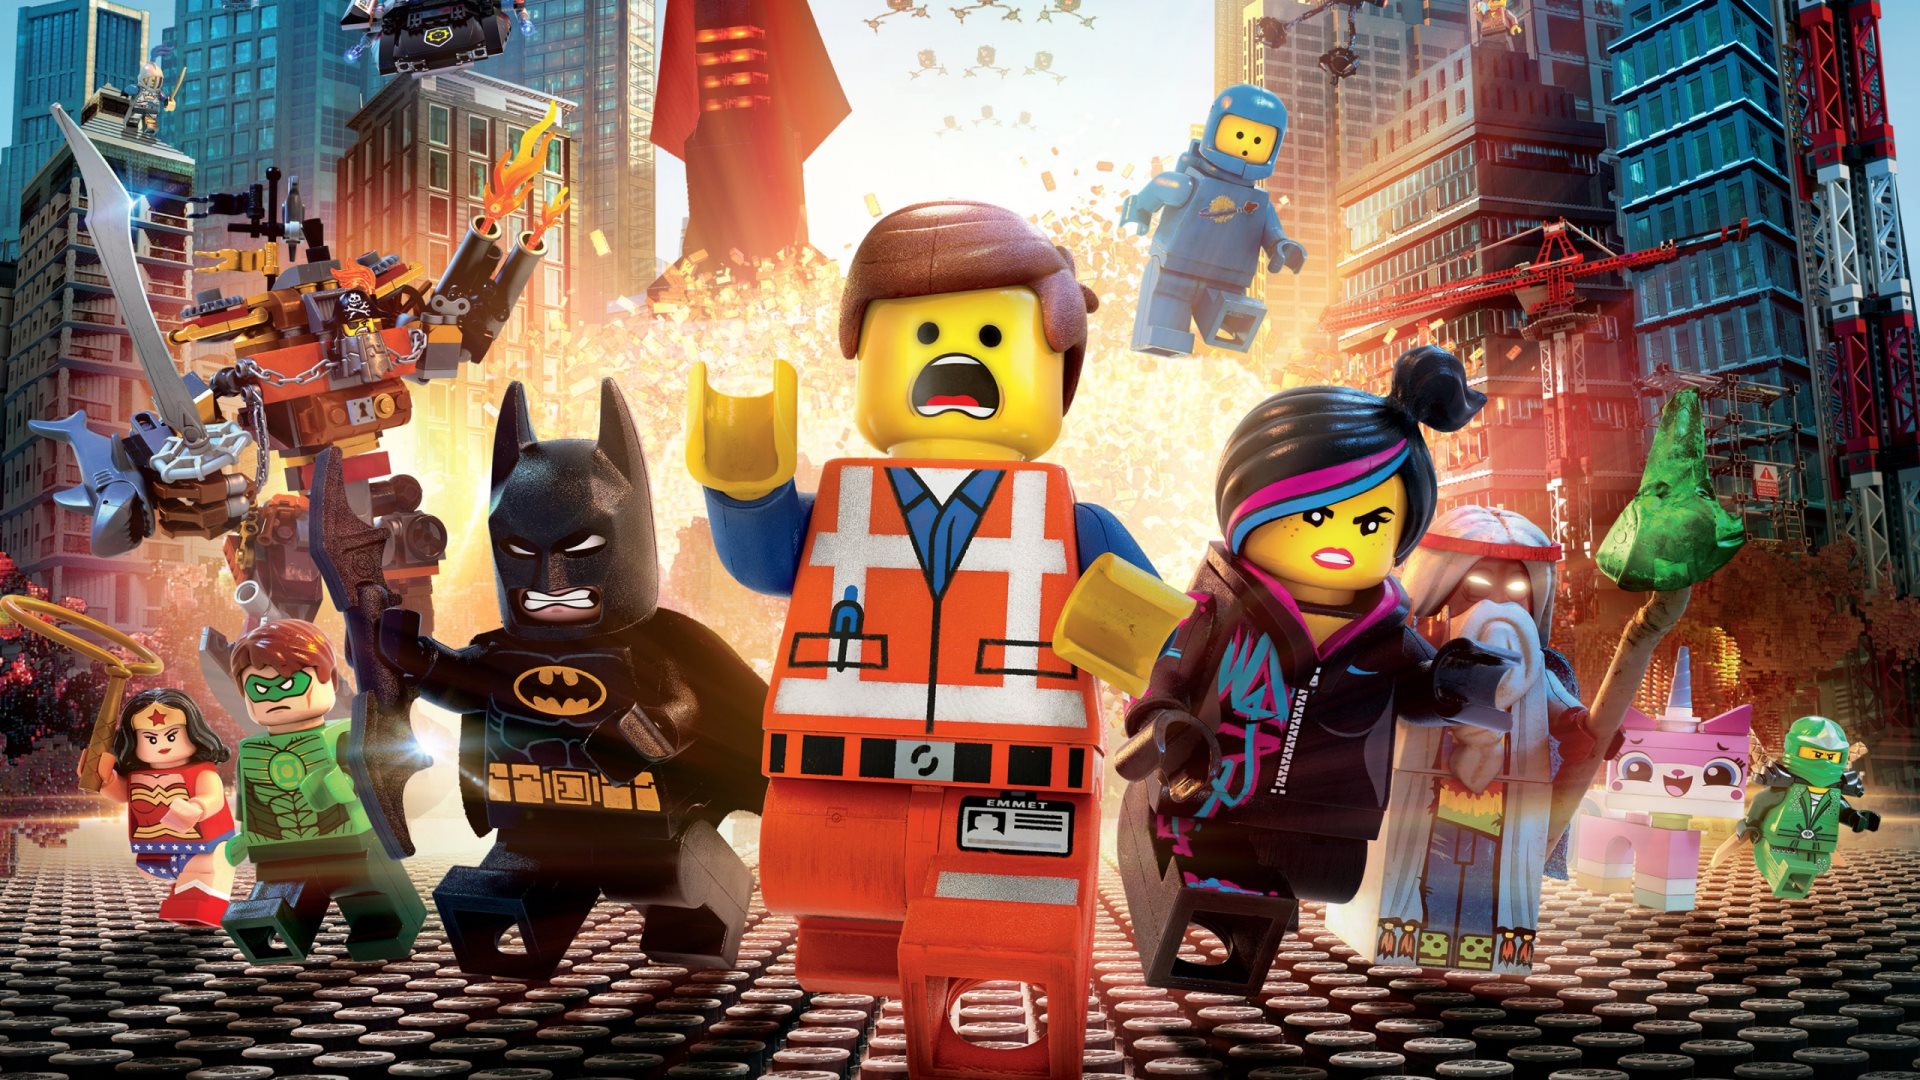 Скачать обои Лего Фильм на телефон бесплатно